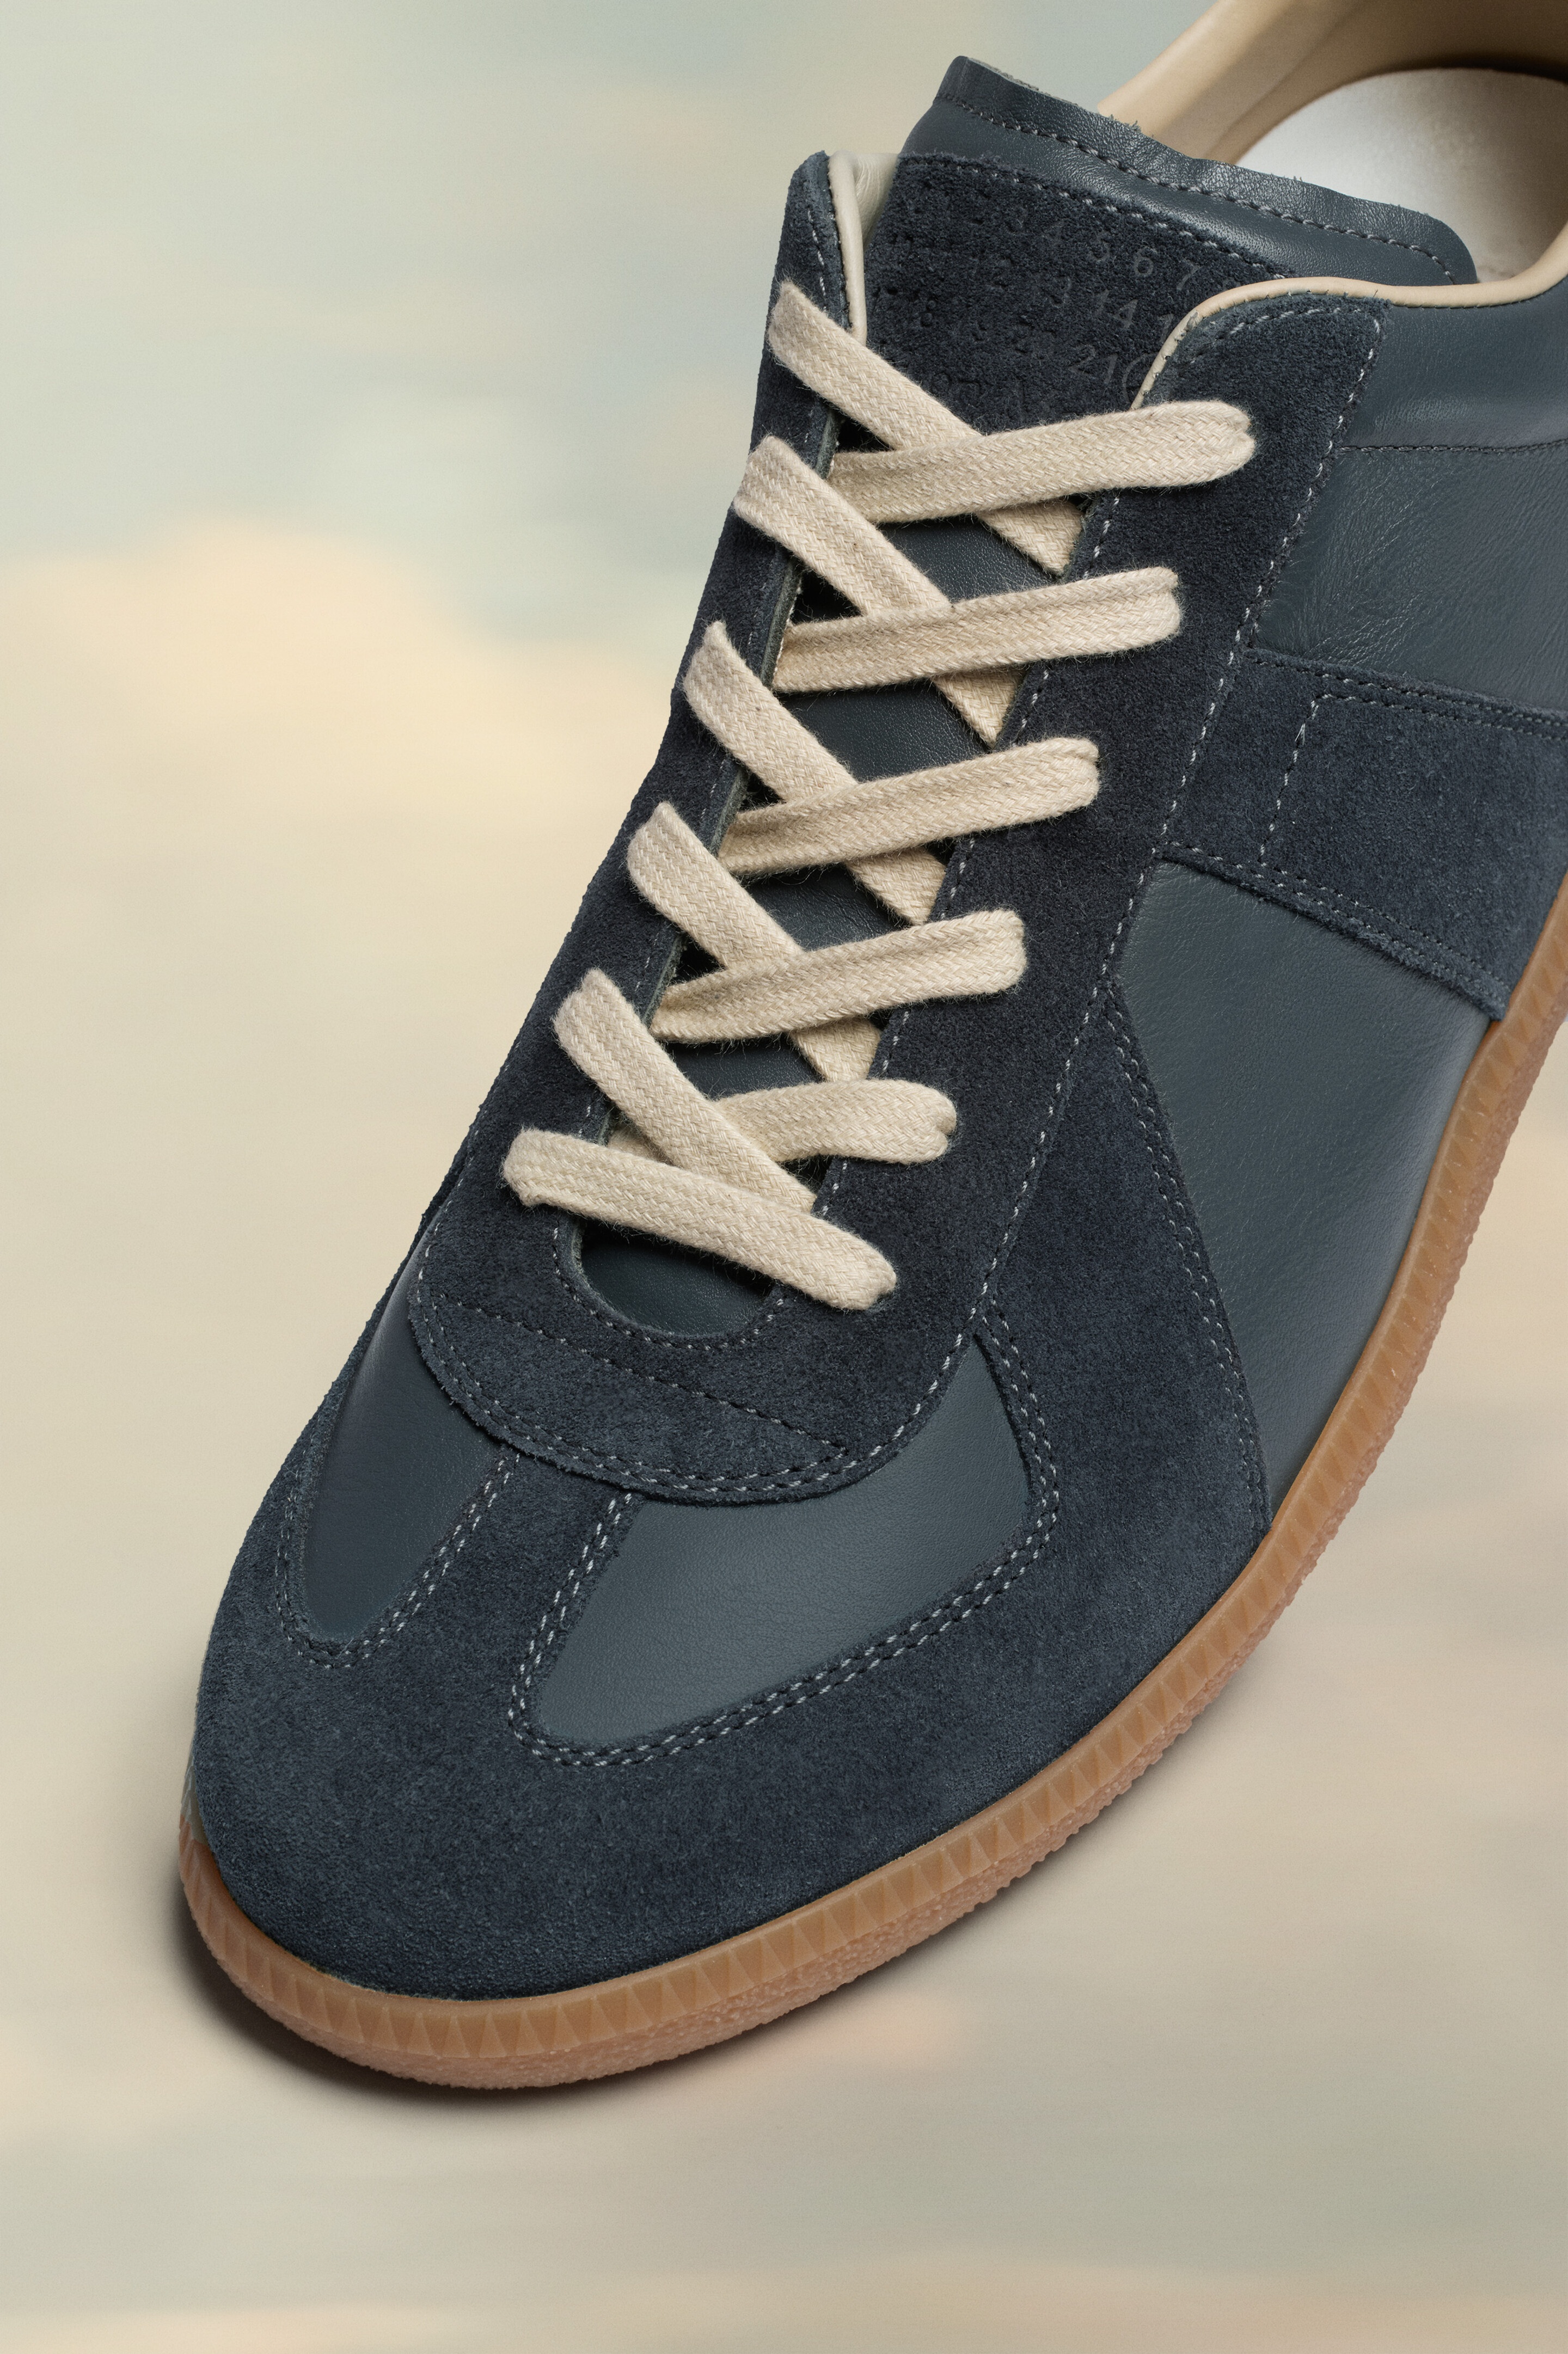 Replica sneakers - 3